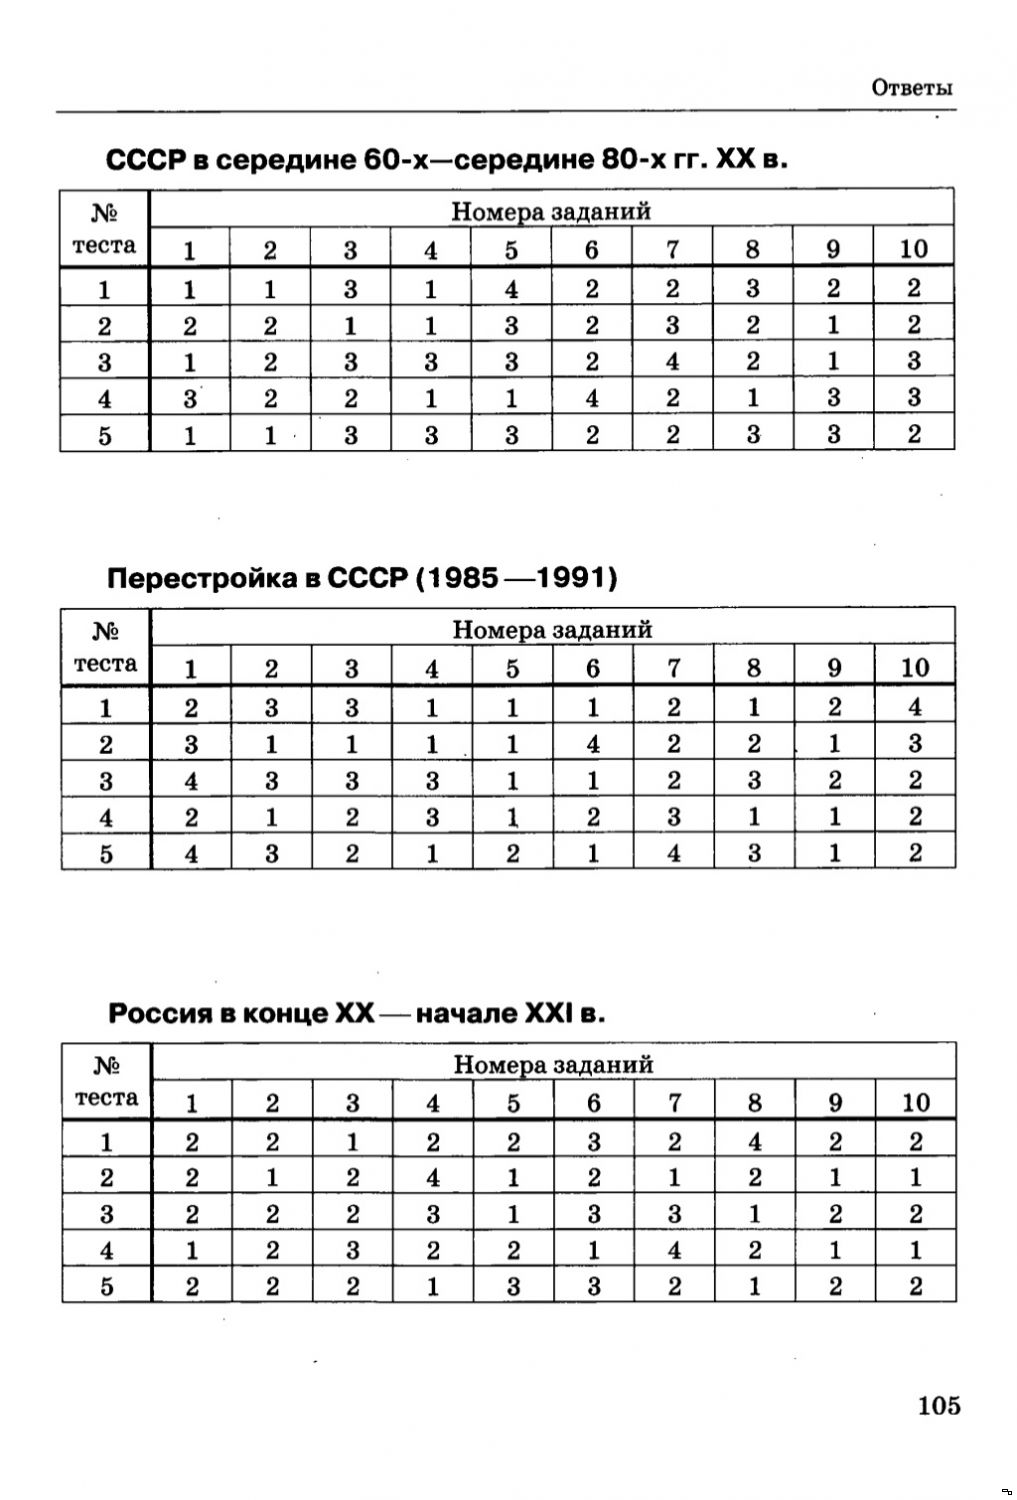 Тесты онлайн по истории россии с 1900 года по 1916 9 класс